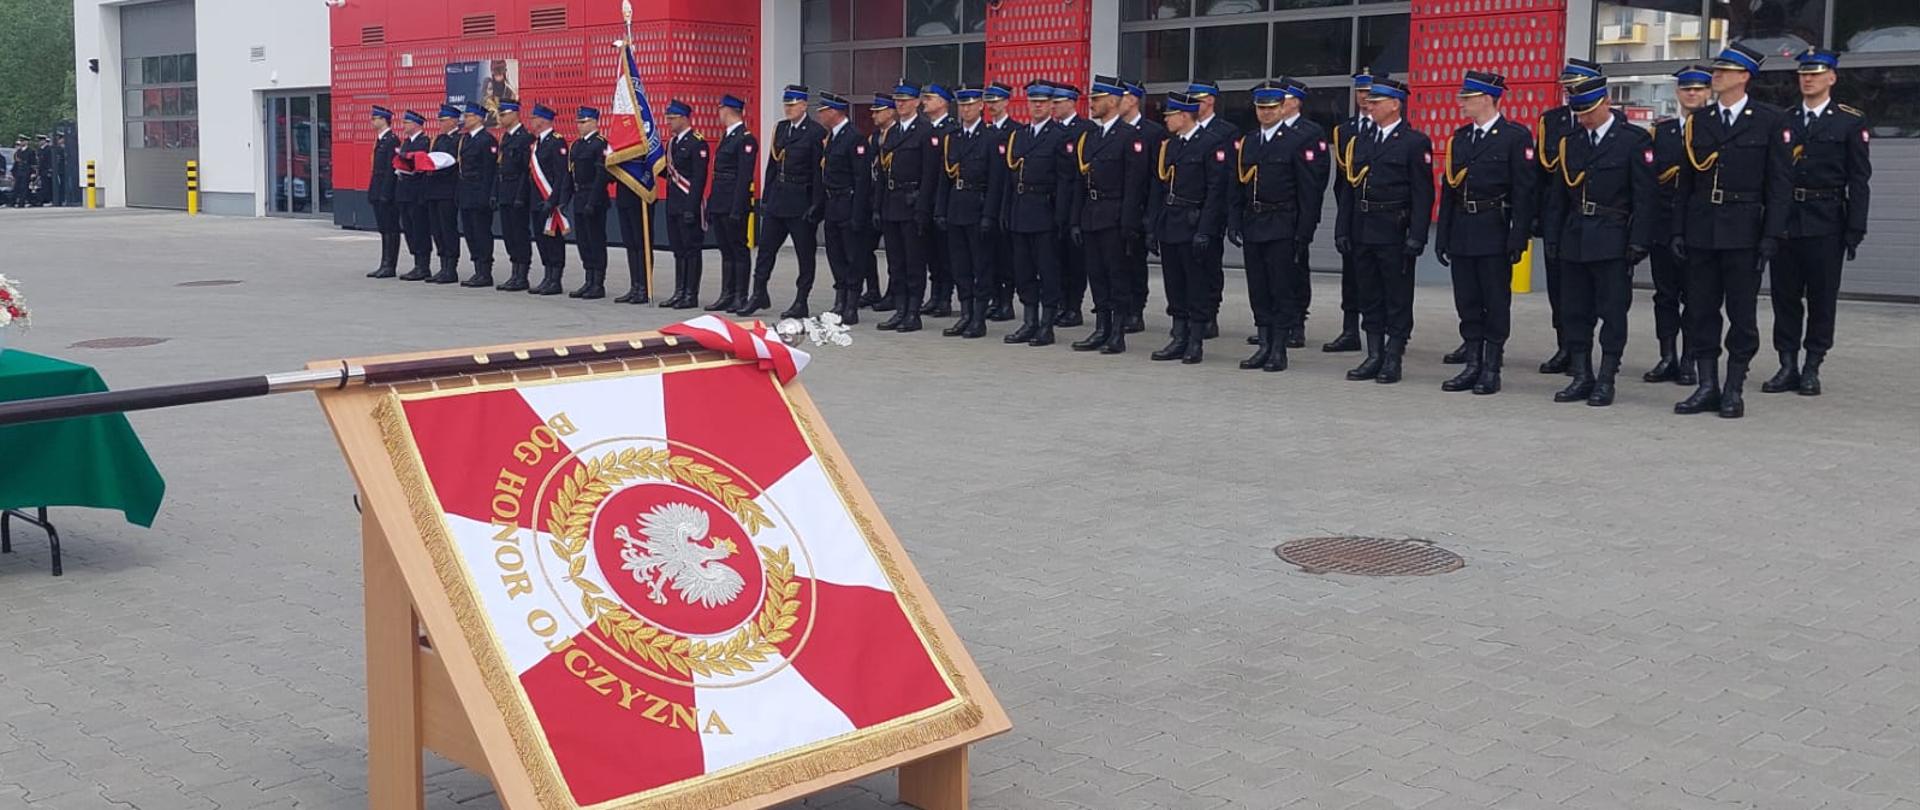 Zdjęcie sztandaru na tle jednostki ratowniczo-gaśniczej. Przed jednostką stoją w mundurach strażacy.